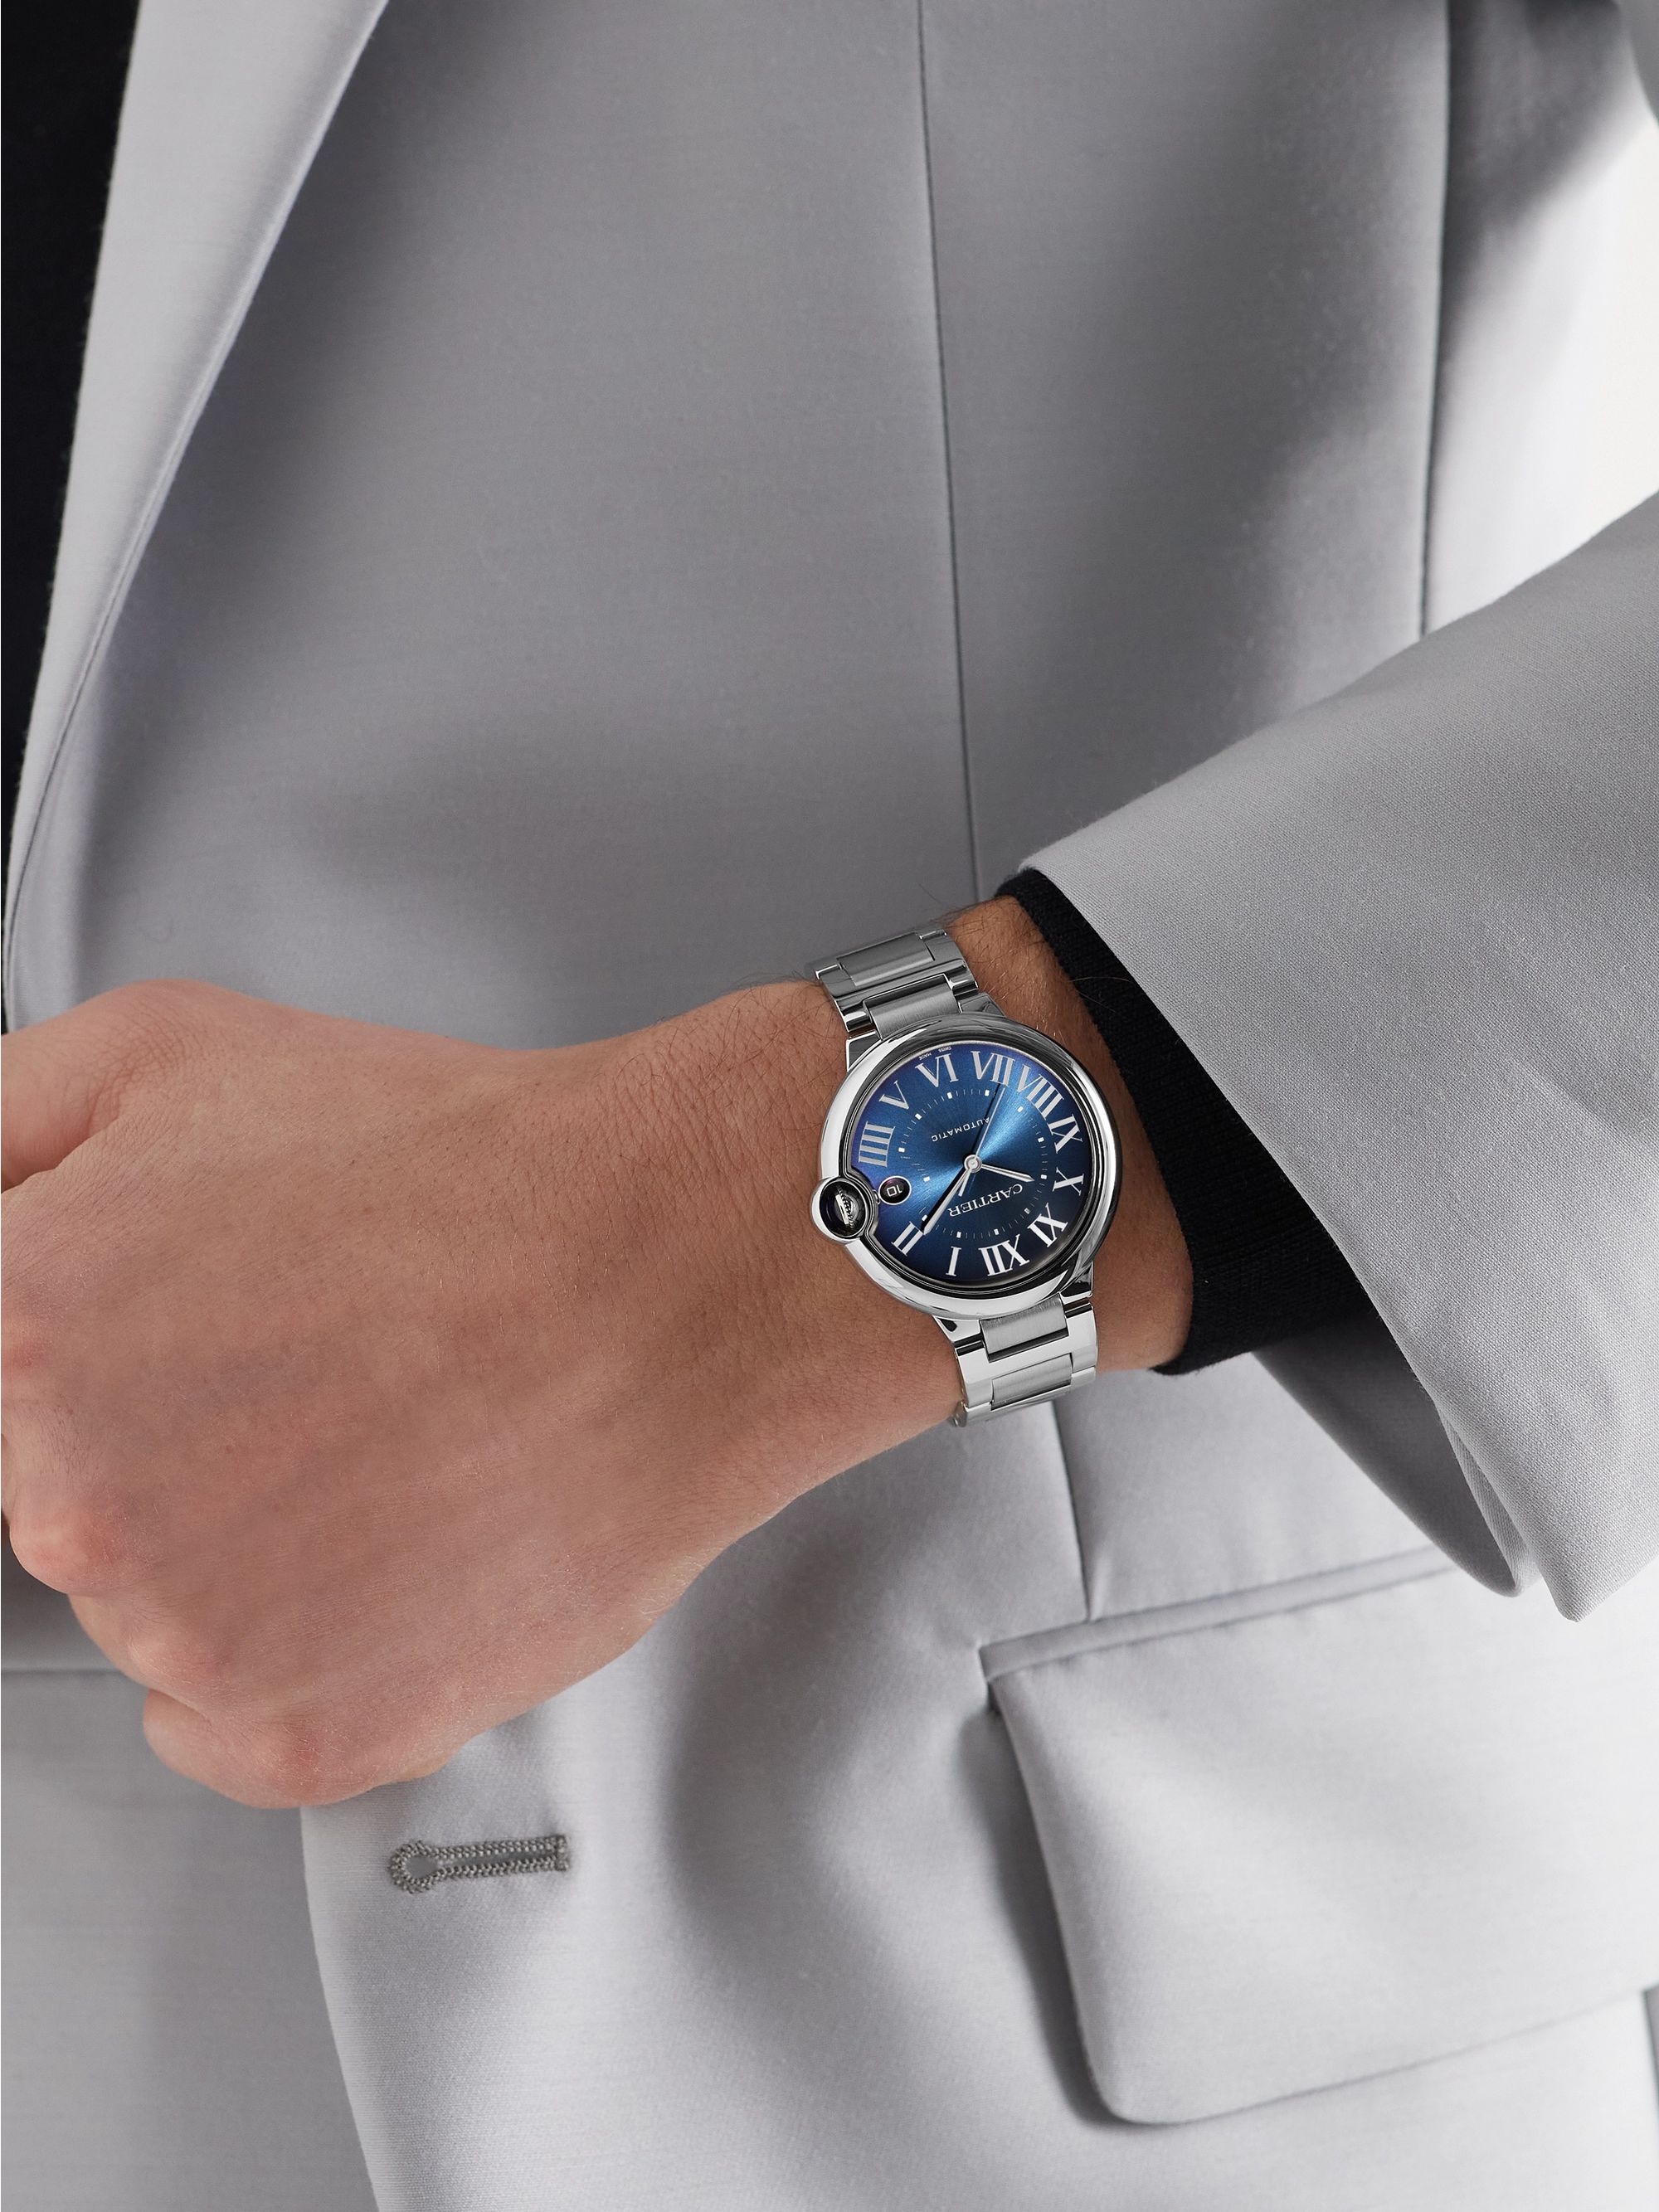 CARTIER Ballon Bleu de Cartier Automatic 40mm Stainless Steel Watch, Ref. No. WSBB0061